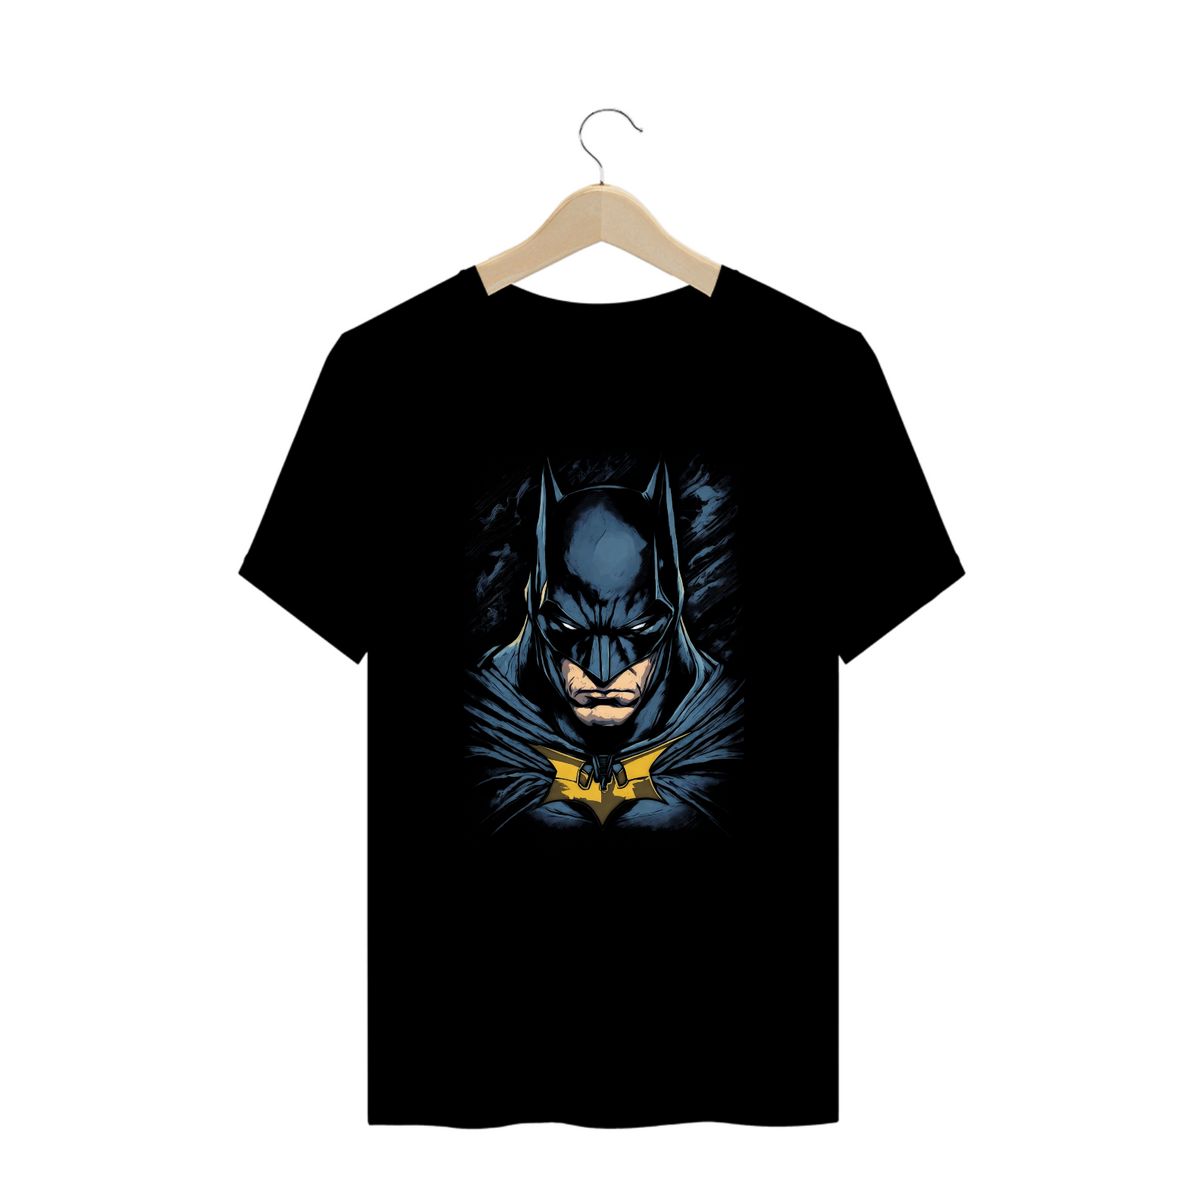 Nome do produto: Camisa Batman